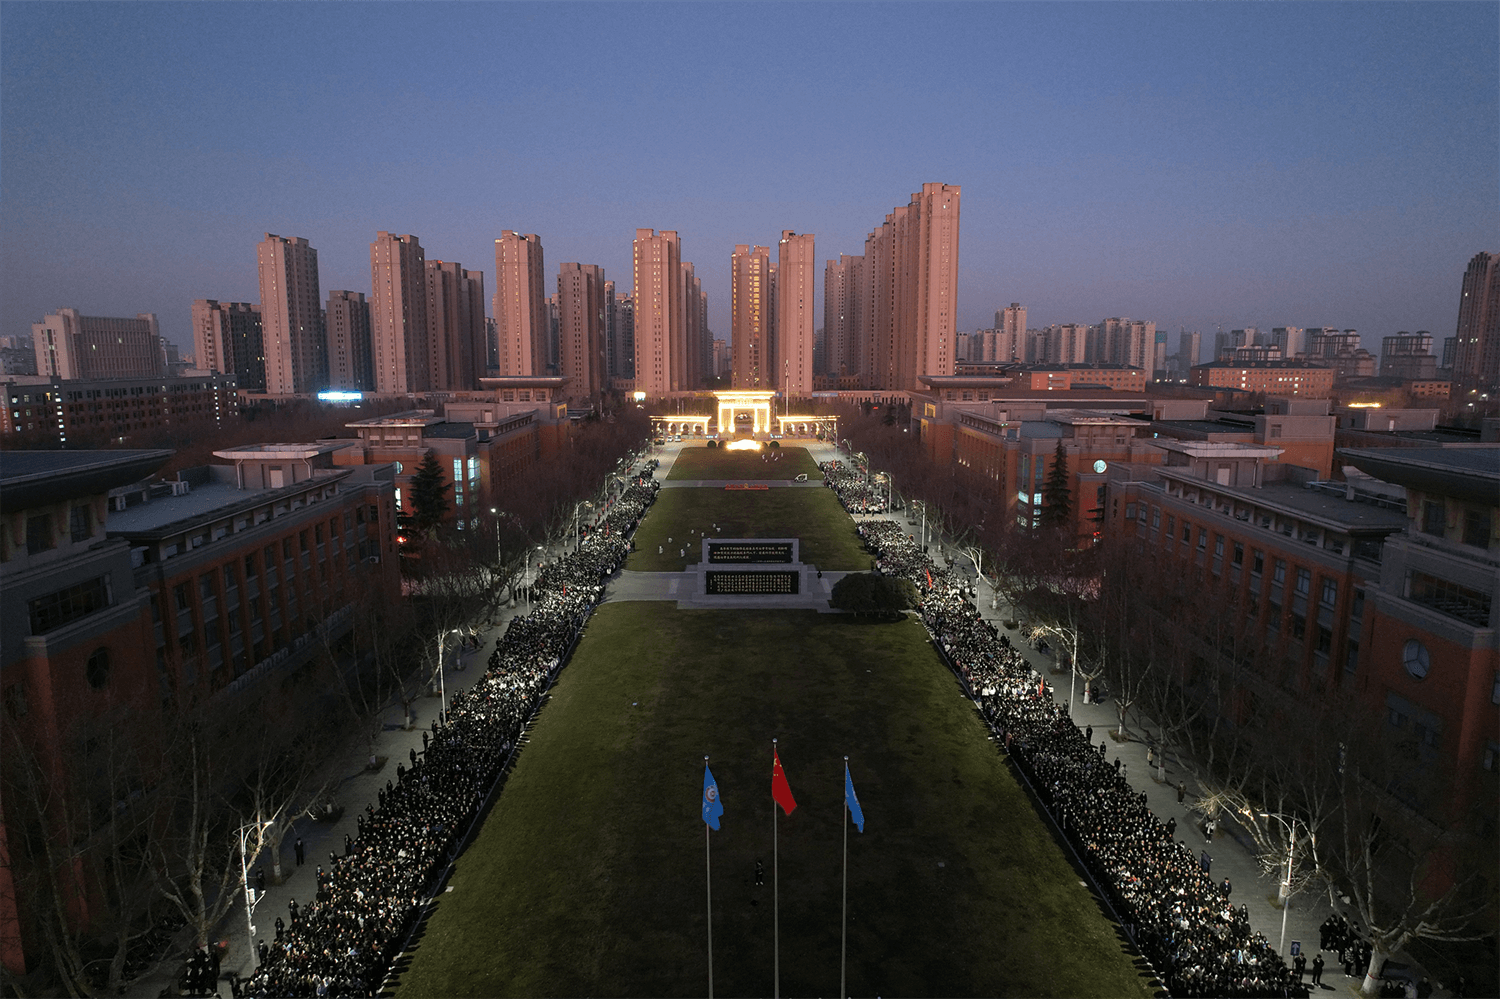 郑州商学院全景图图片